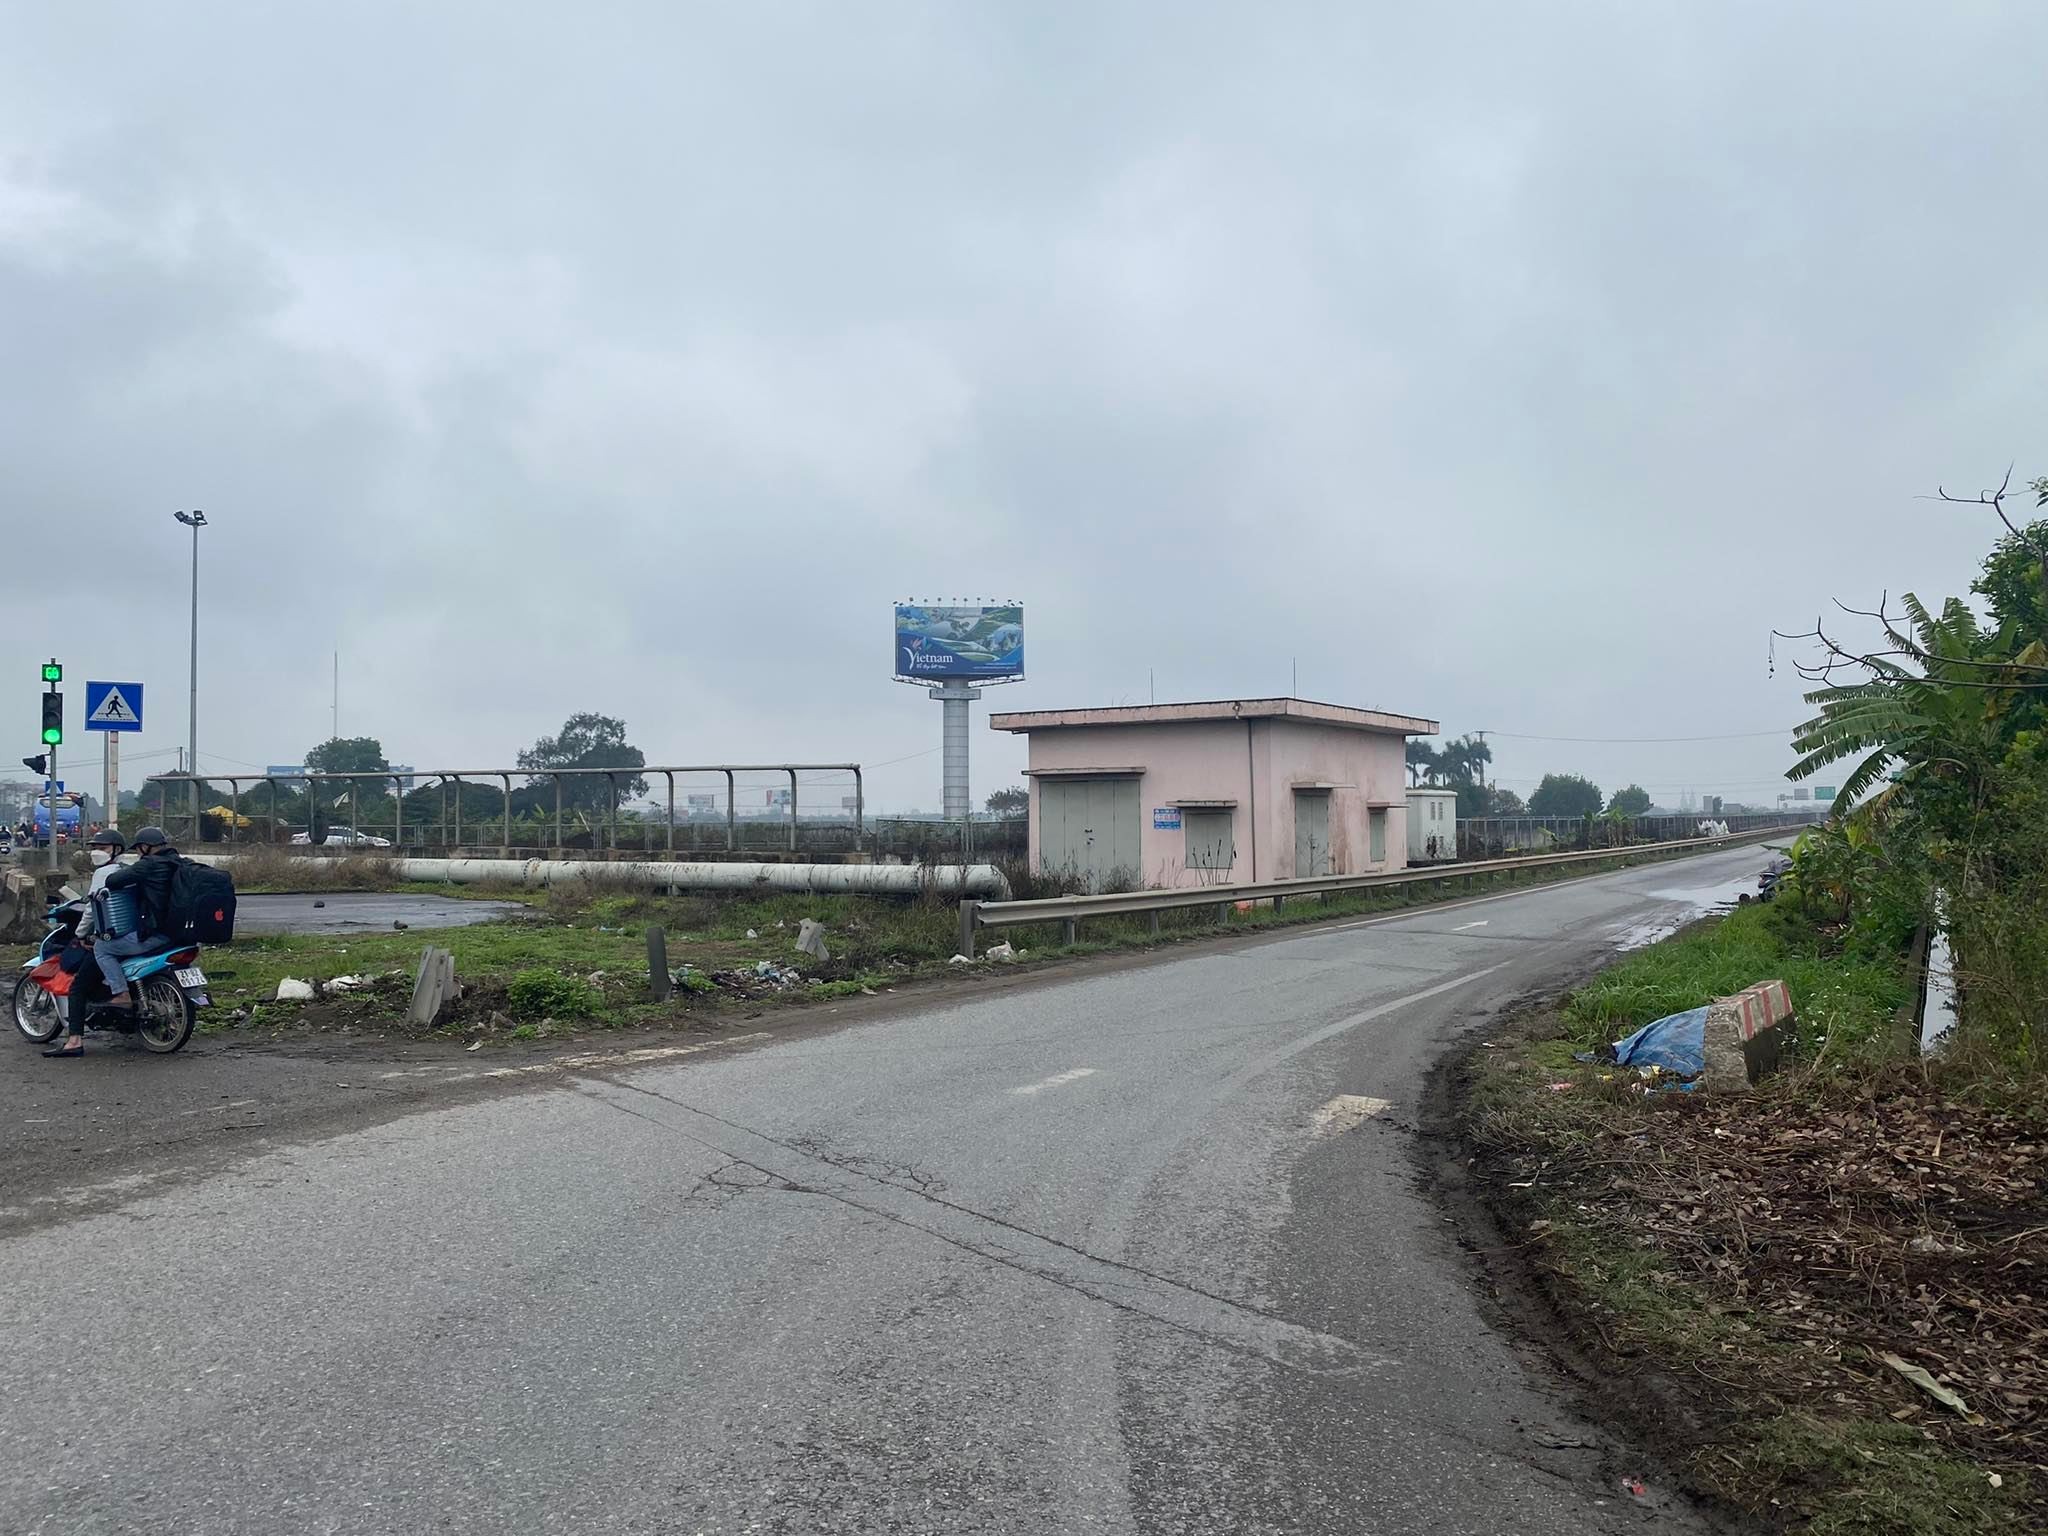 
Đoạn nối đi quốc lộ 18 cũng là khu vực dự kiến triển khai điểm đầu tuyến đường vành đai 4 Hà Nội
